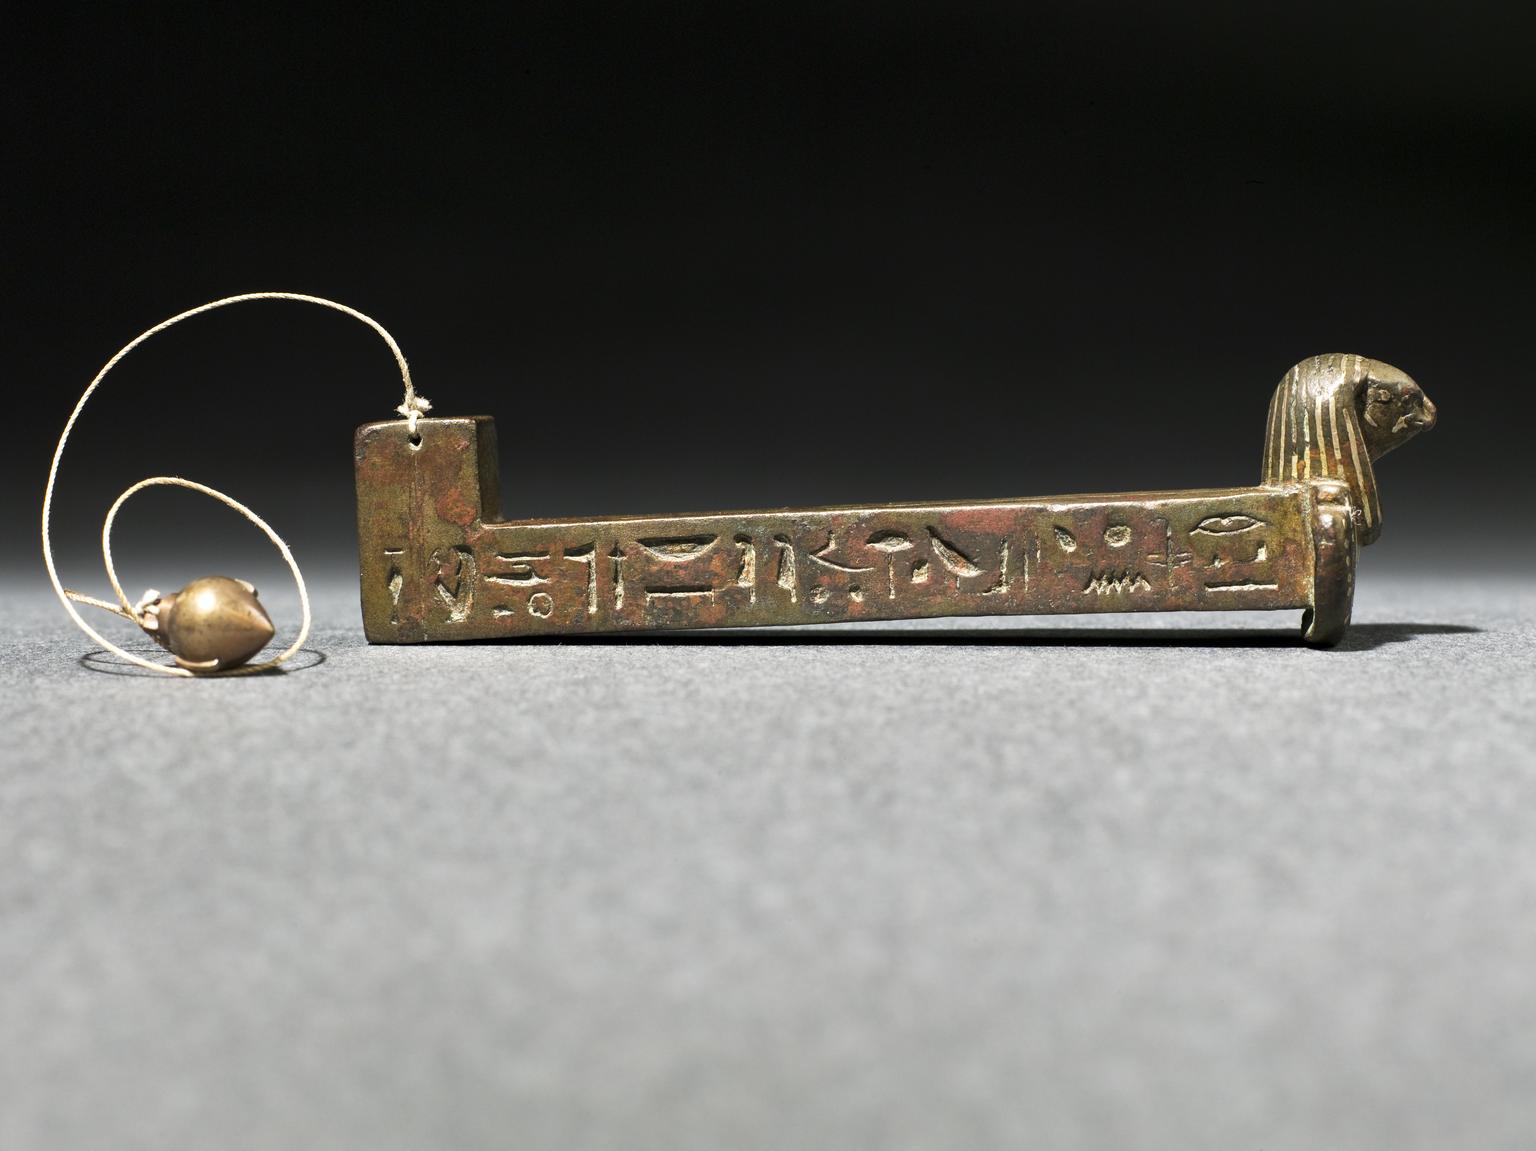 'Merkhet', instrumen penunjuk waktu astronomi Mesir Kuno, perunggu dengan teks hieroglif bertatahkan logam elektum, dilengkapi dengan replika plub bob, 600 SM.